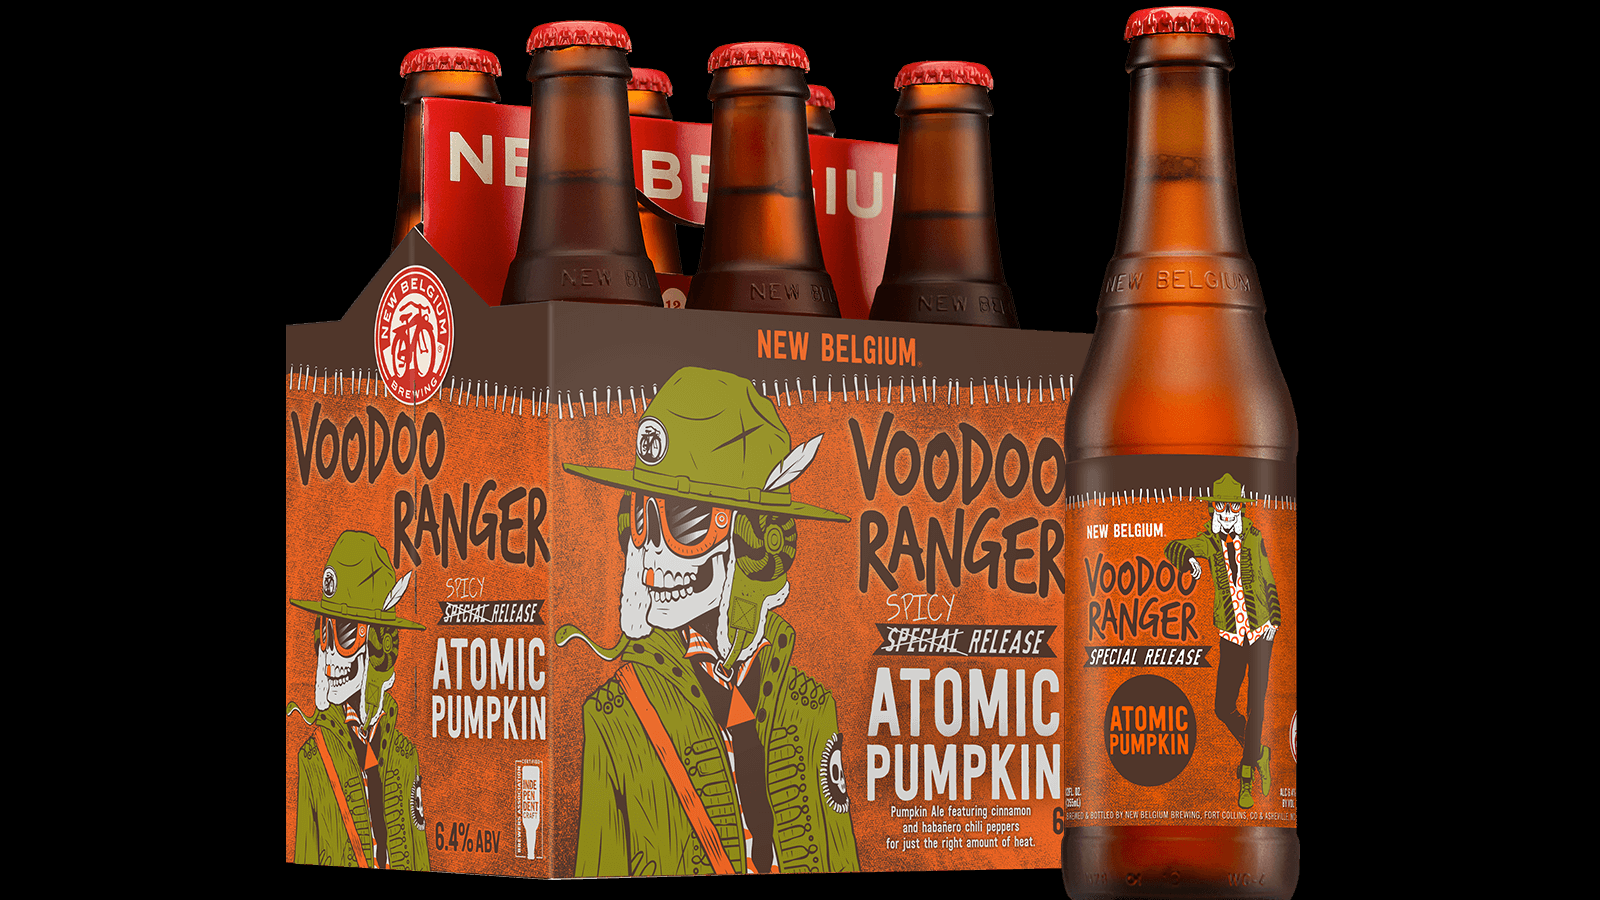 new-belgium-brewing-co-debuts-voodoo-ranger-atomic-pumpkin-the-beer